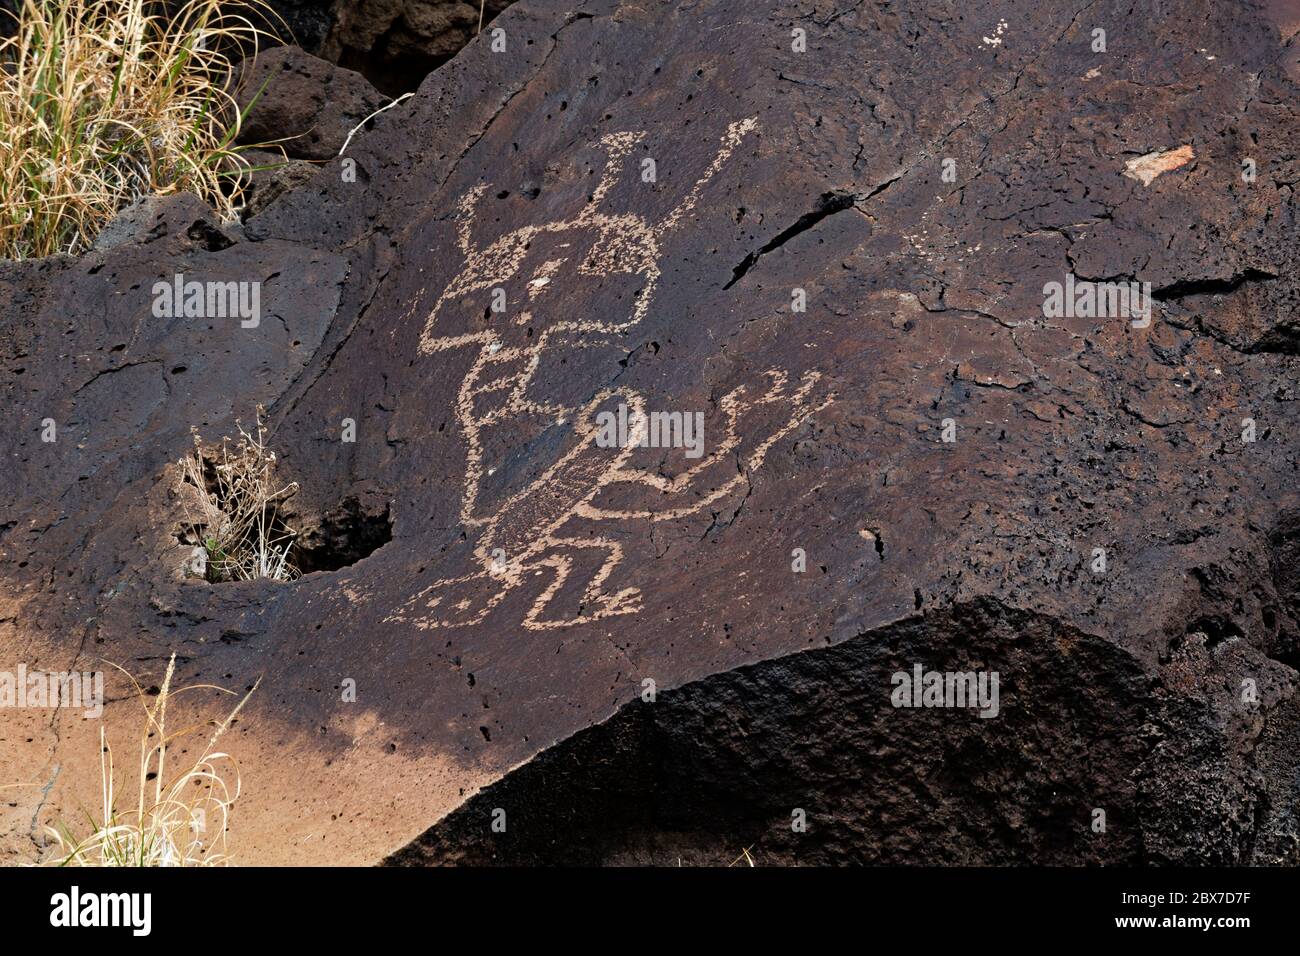 NM00525-00...NOUVEAU MEXIQUE - UNE figure mystique a pecté dans le vernis du désert sur une roche basaltique dans le monument national de Petroglyph. Banque D'Images